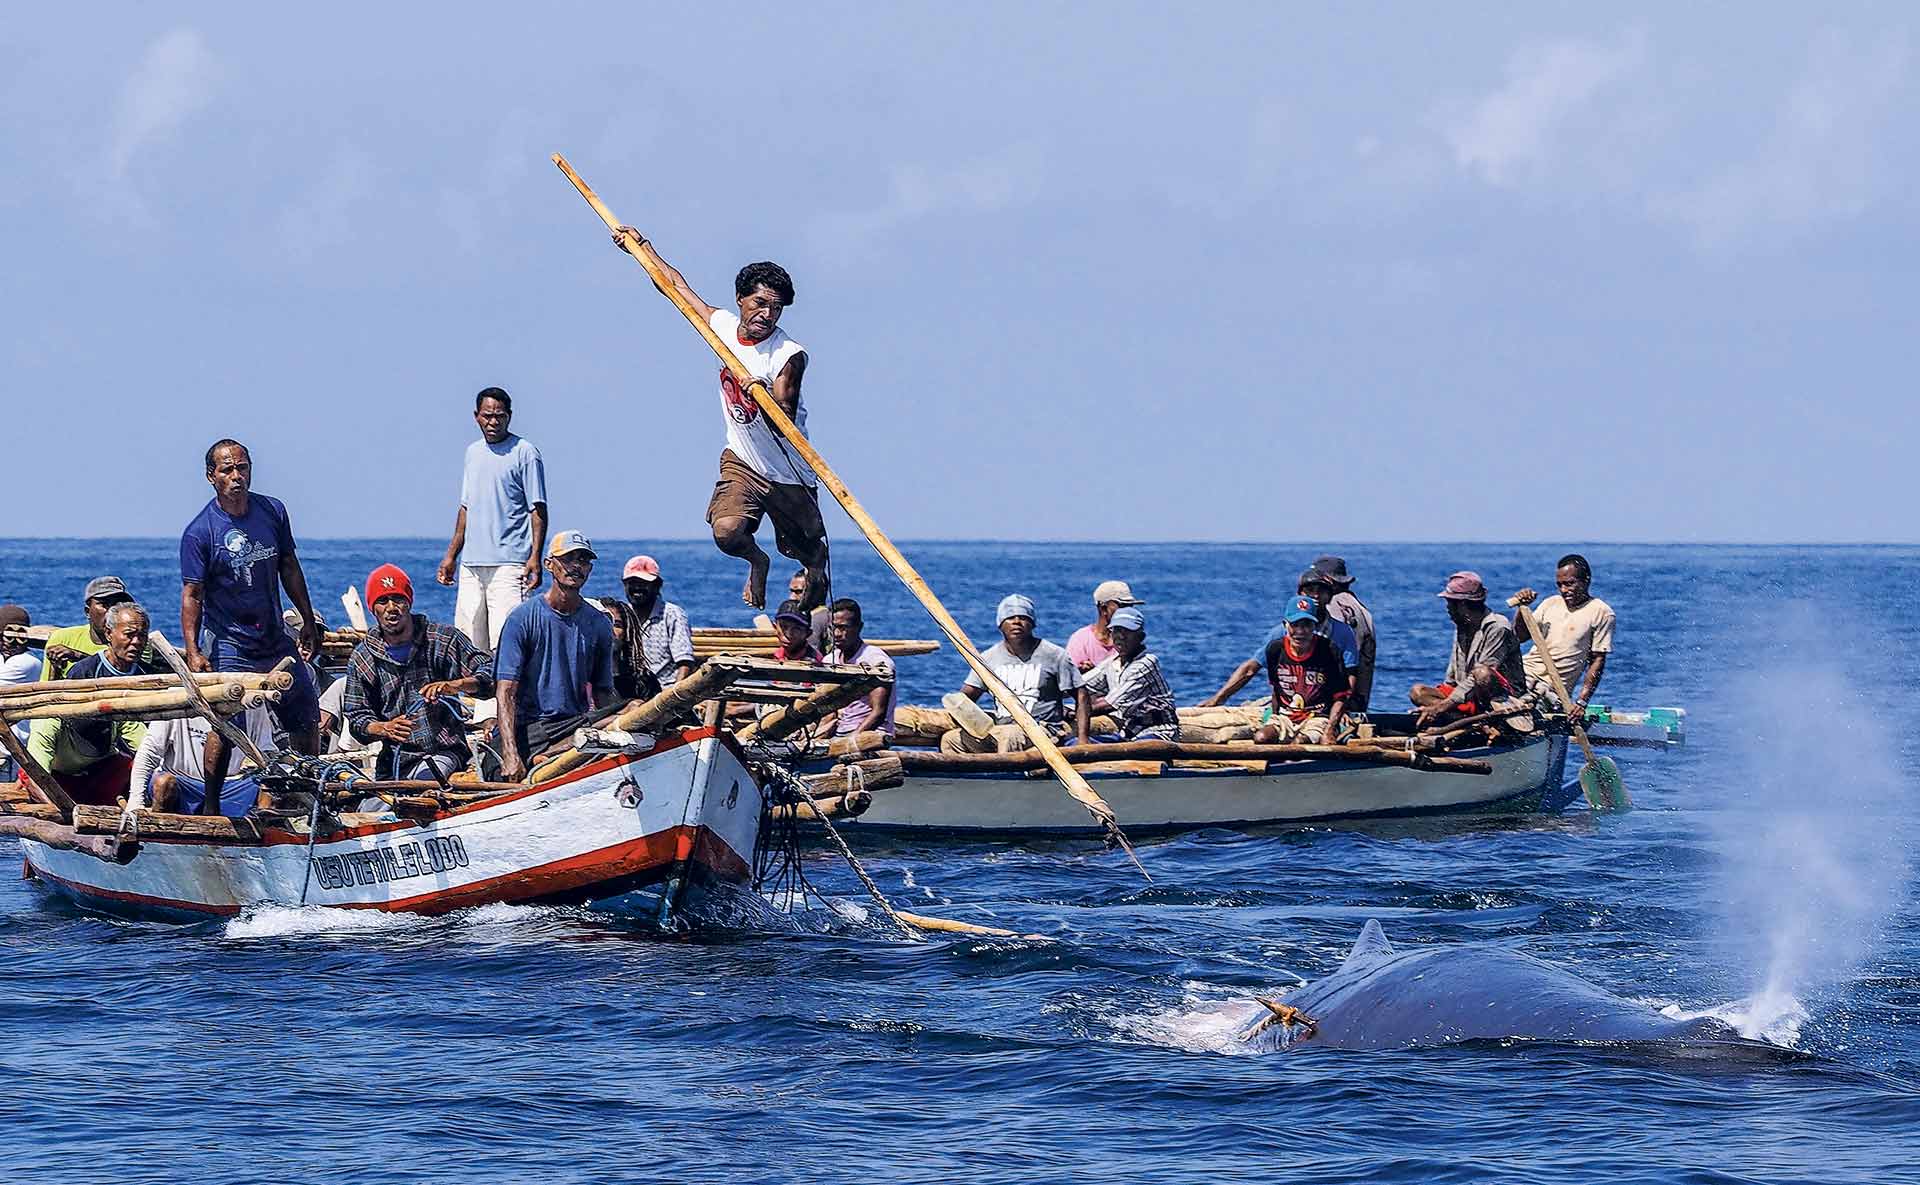 balleneros-caza-ballenas-arpon-indonesia-cultura.jpg